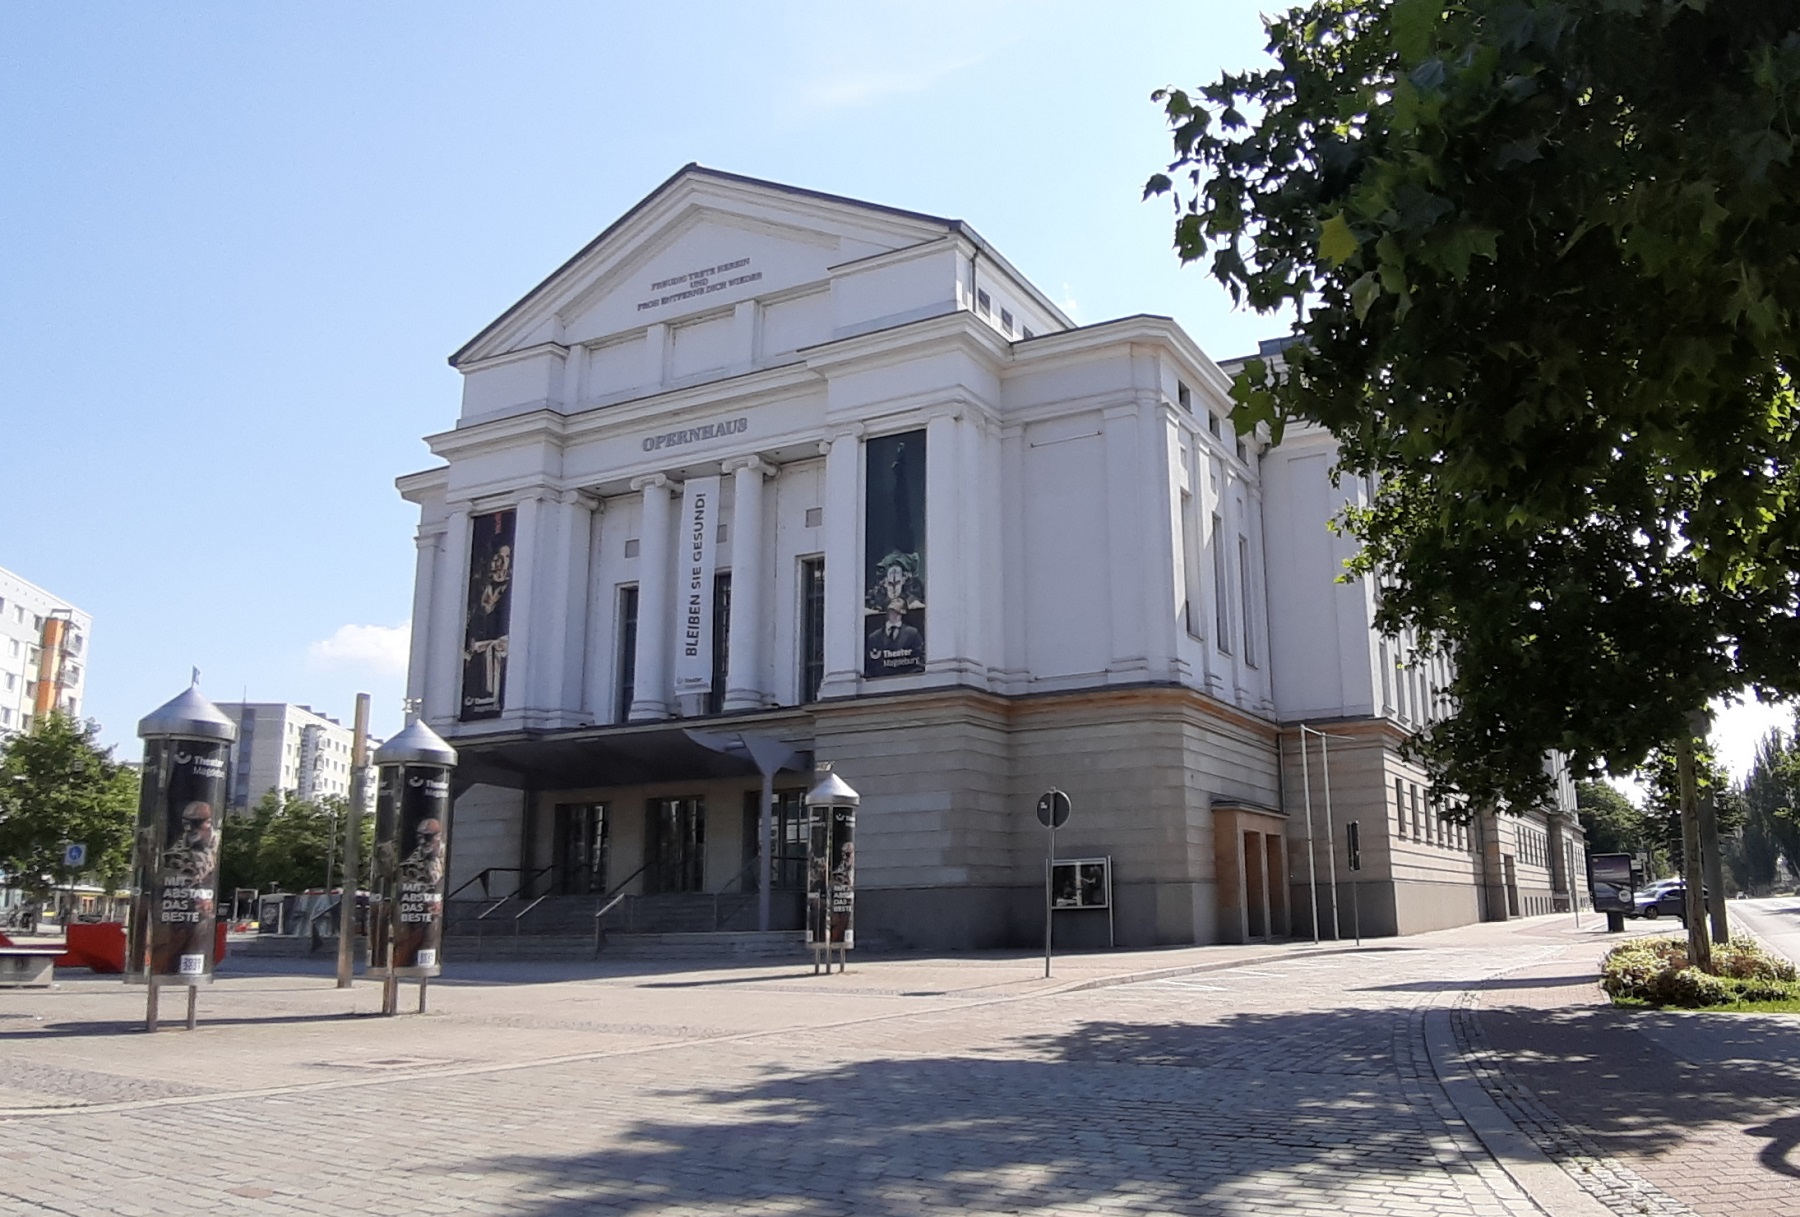 Opernhaus, Magdeburg